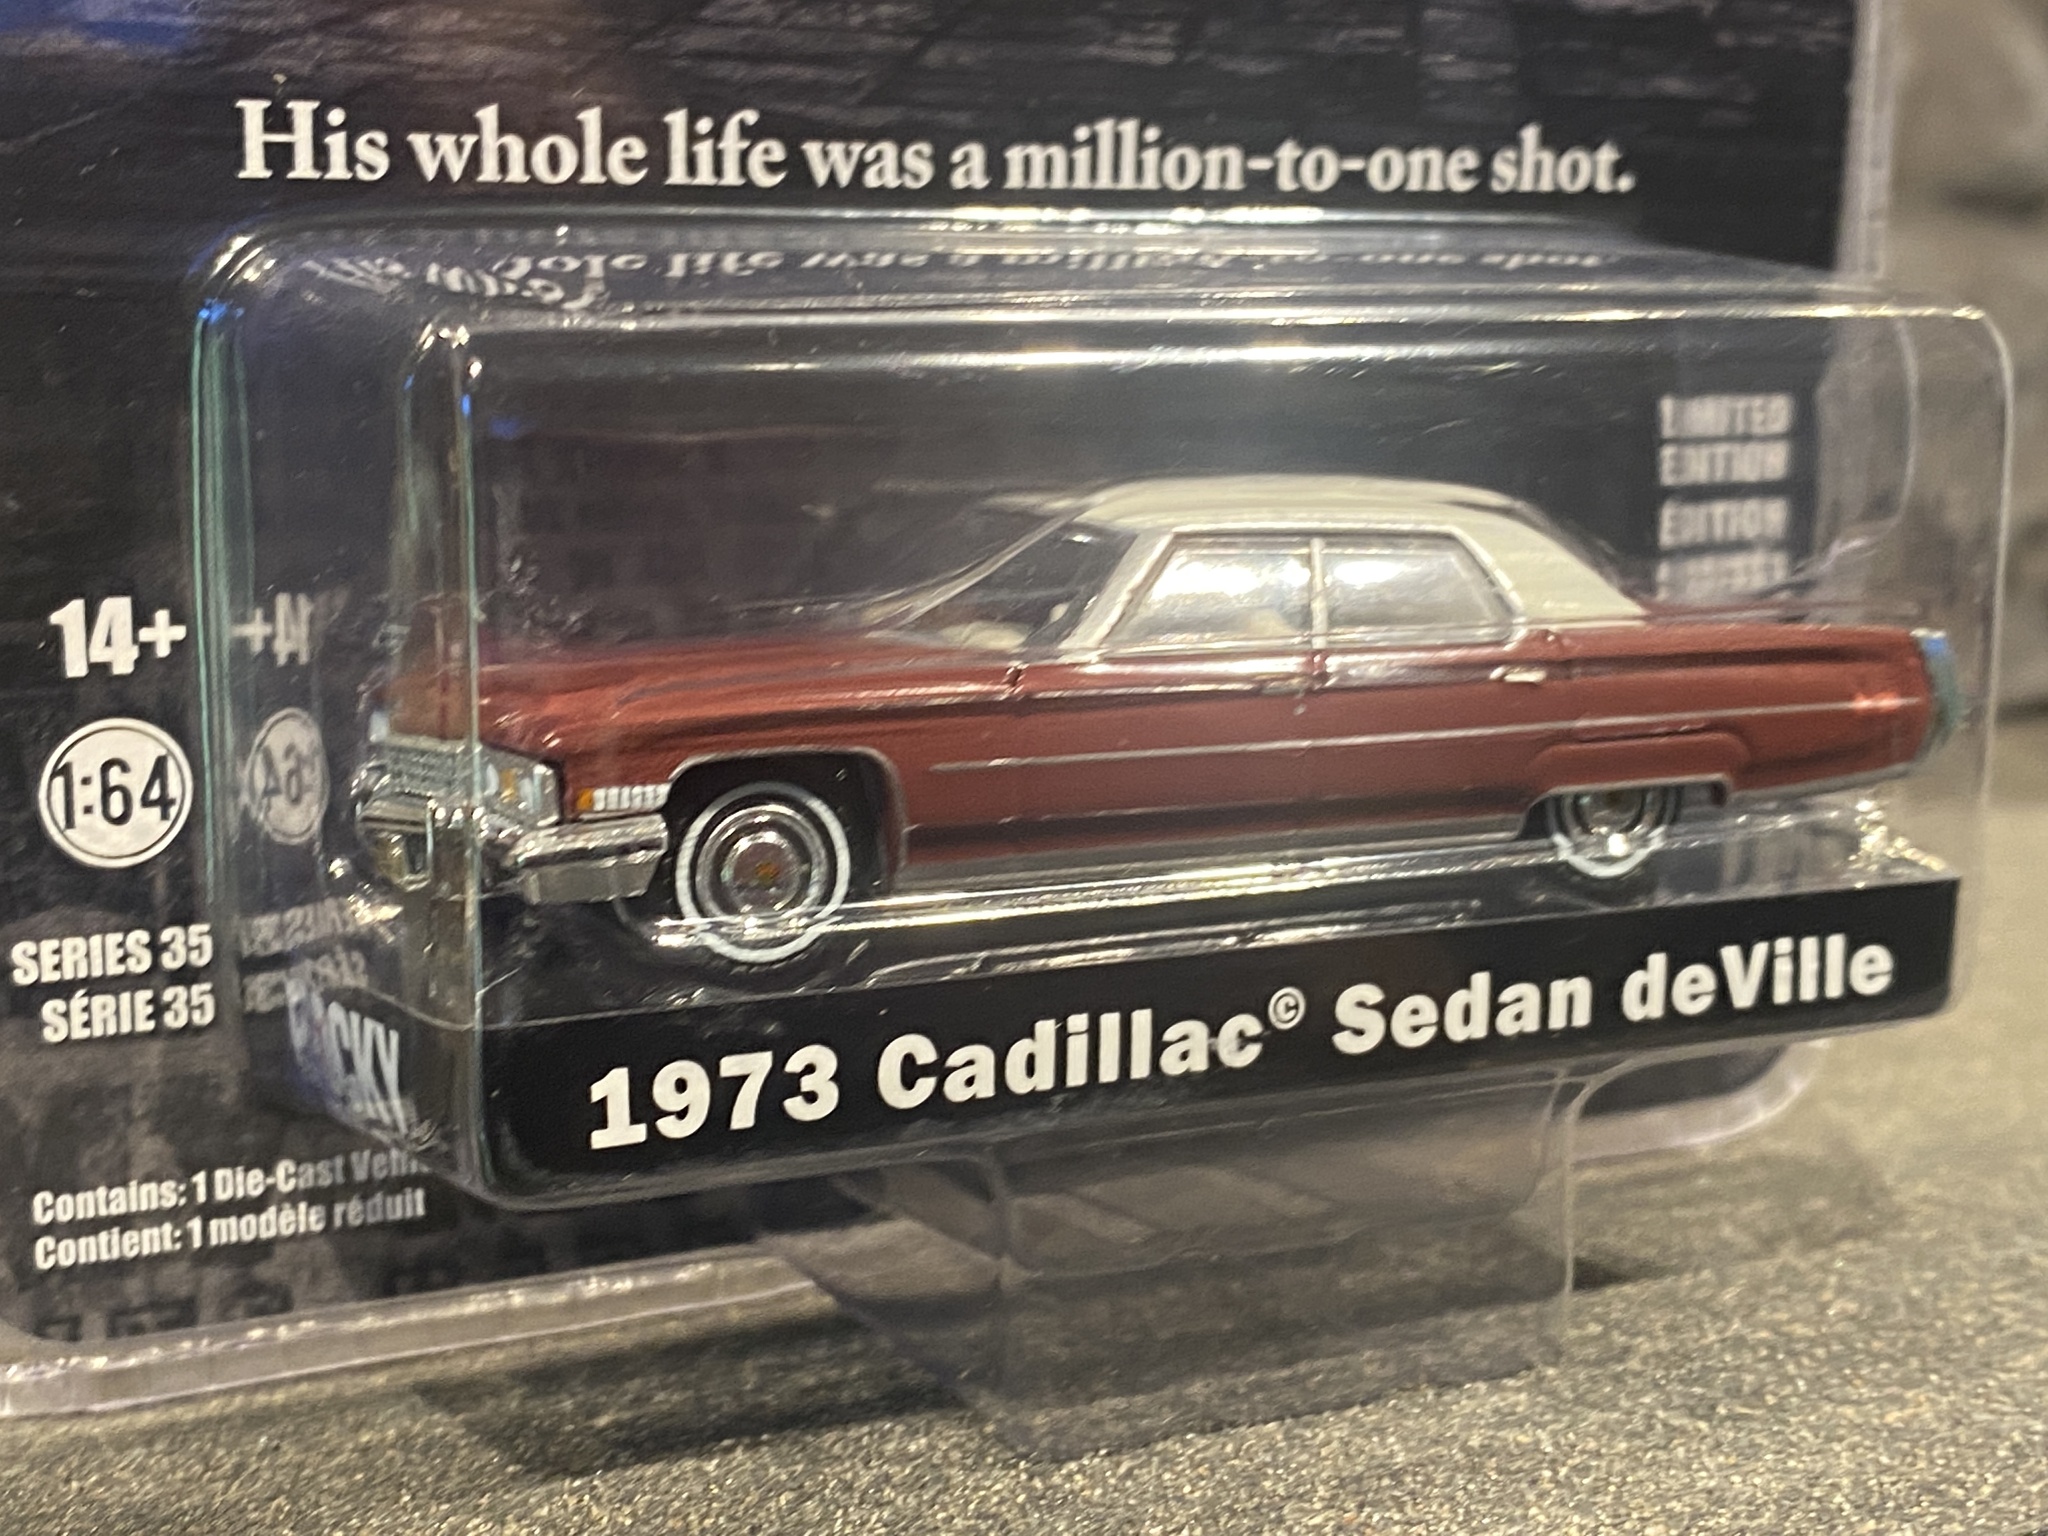 Skala 1/64 Cadillac Sedan deVille 73' "Rocky" från Greenlight Hollywood